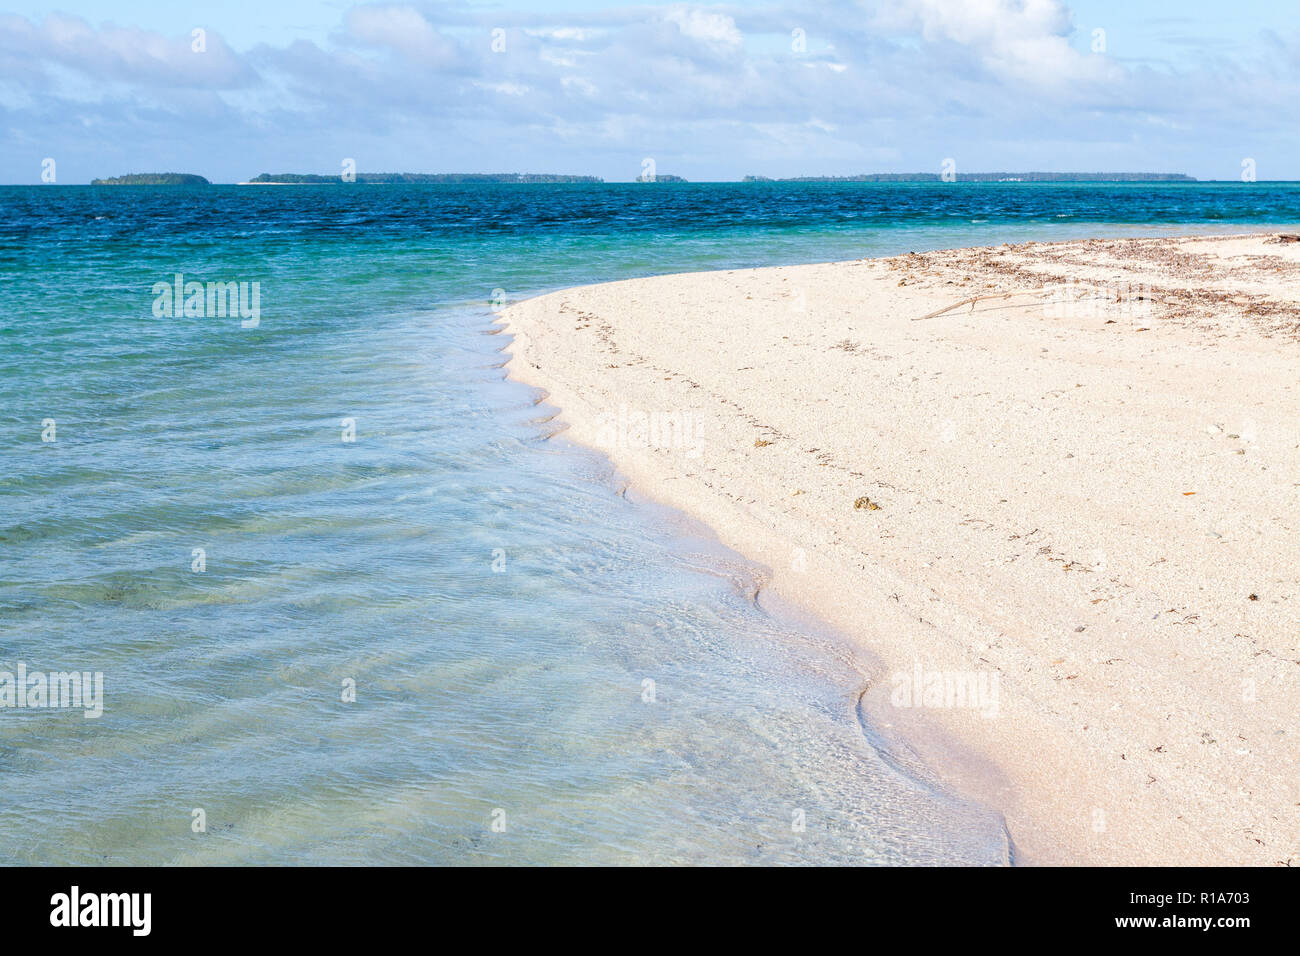 Majuro atoll, isole Marshall, Micronesia, Oceania. La riflessione, rifrazione, interferenza e diffrazione delle onde del mare. Laura beach. Azzurro laguna. Foto Stock